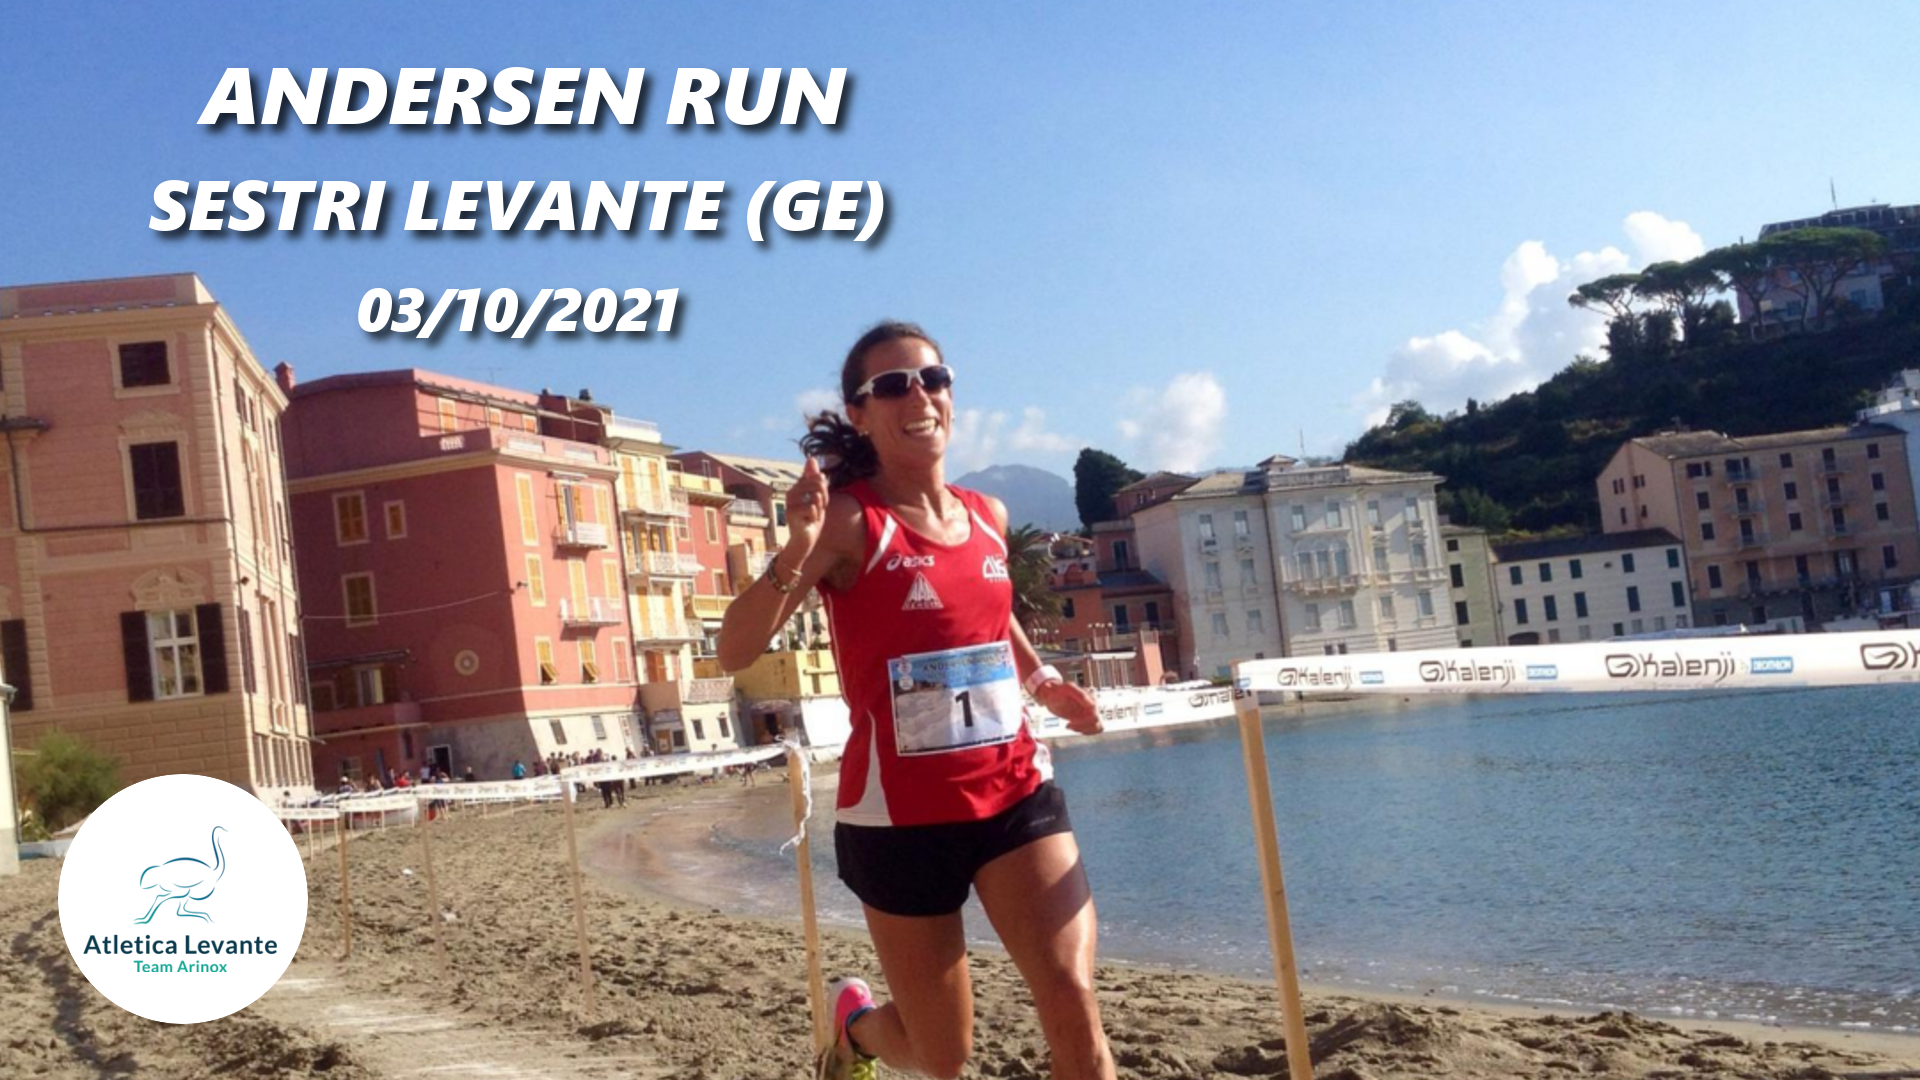 Ritorna il grande running a Sestri Levante con l’Andersen Run!